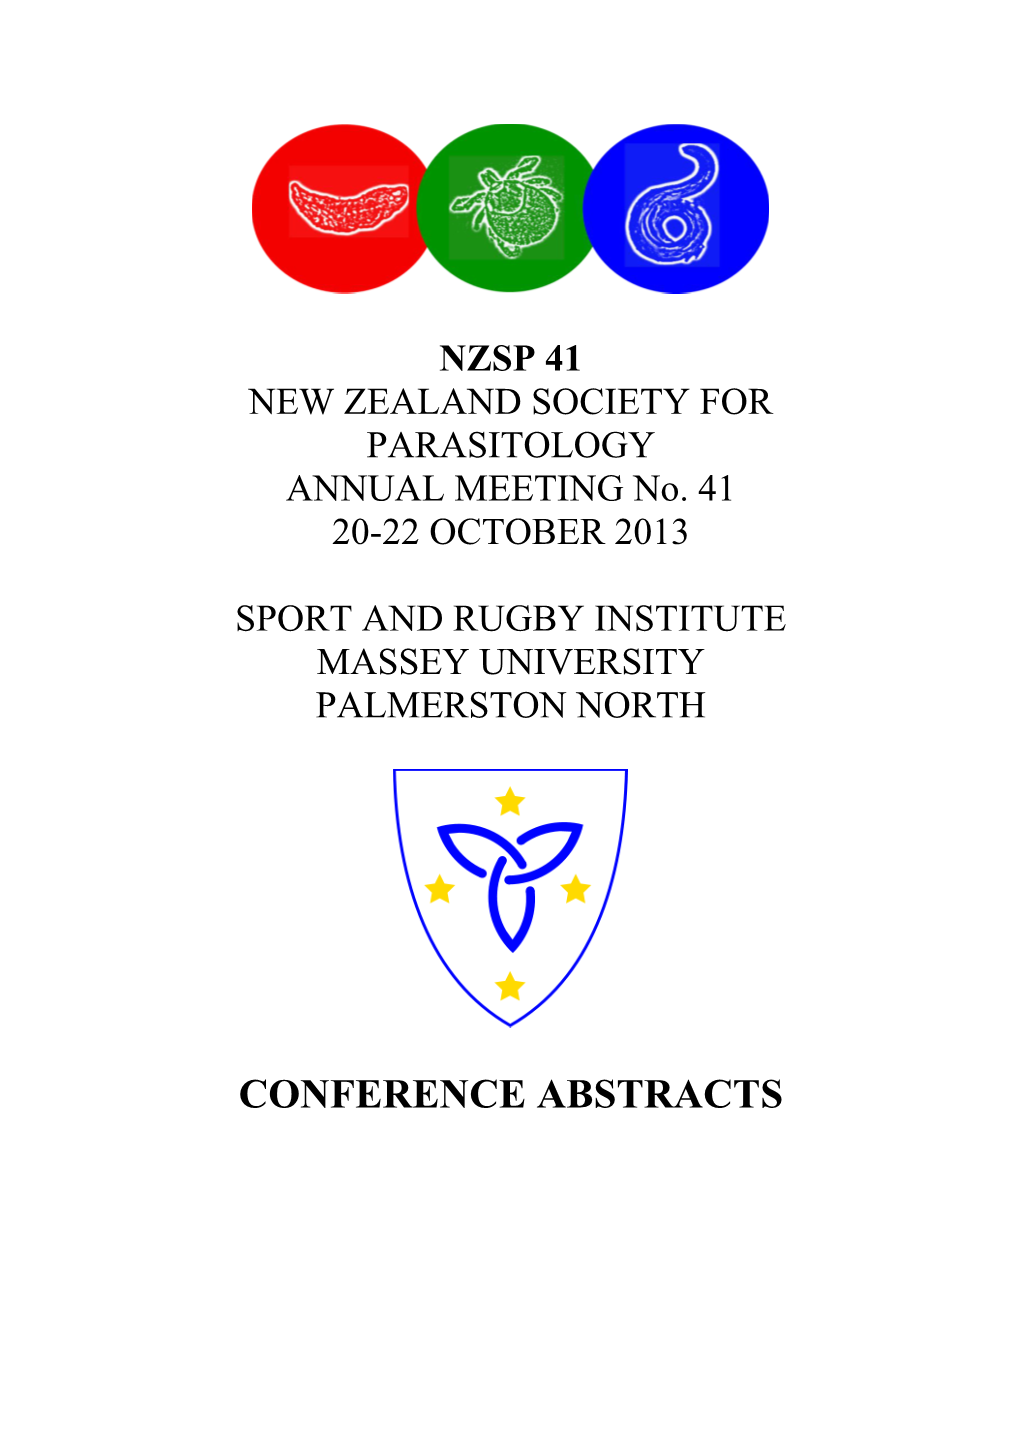 New Zealand Society for Parasitology